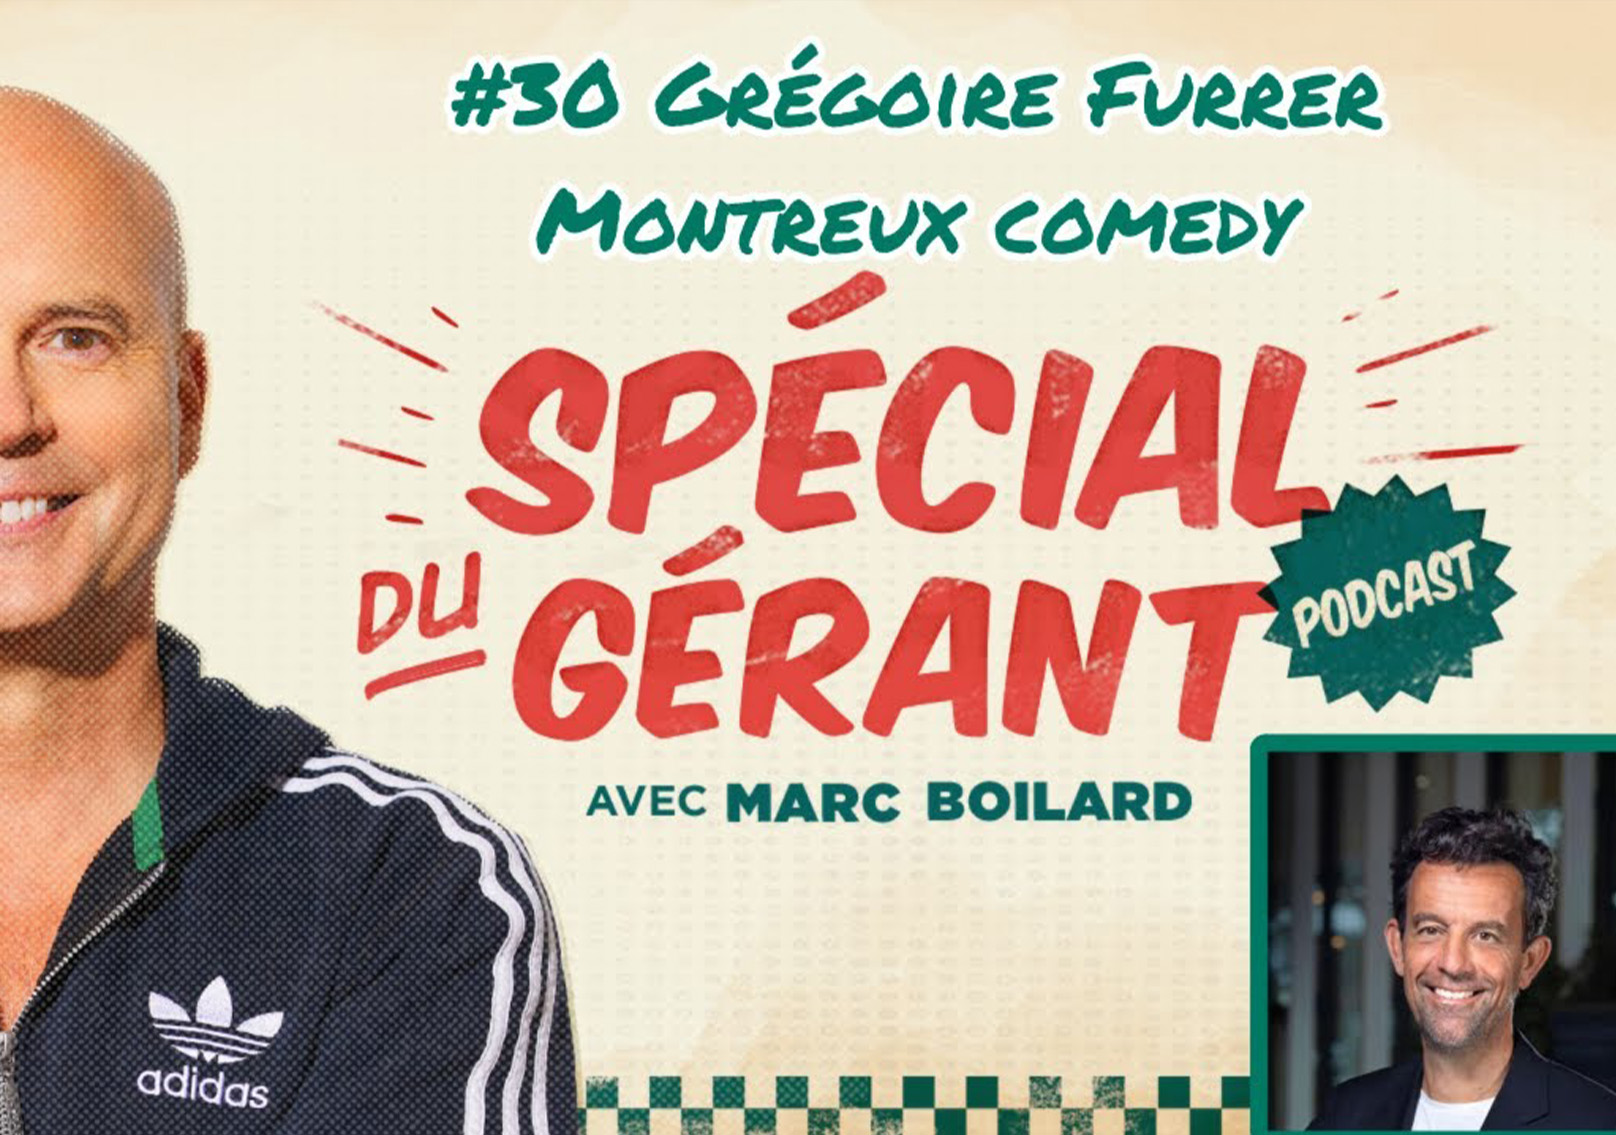 Vignette Le podcast du gérant #30 avec Grégoire Furrer